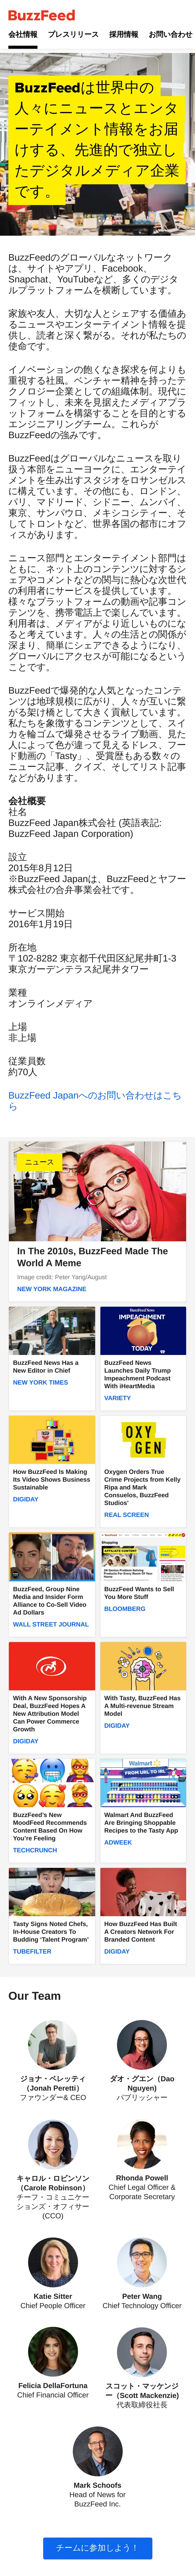 キャプチャ画面 会社名:BuzzFeed Japan株式会社プロジェクト名:BuzzFeed Japan株式会社 画面名:全国トップ デバイス名:SPカテゴリ:広告・クリエイティブタグ:SP,全国トップ